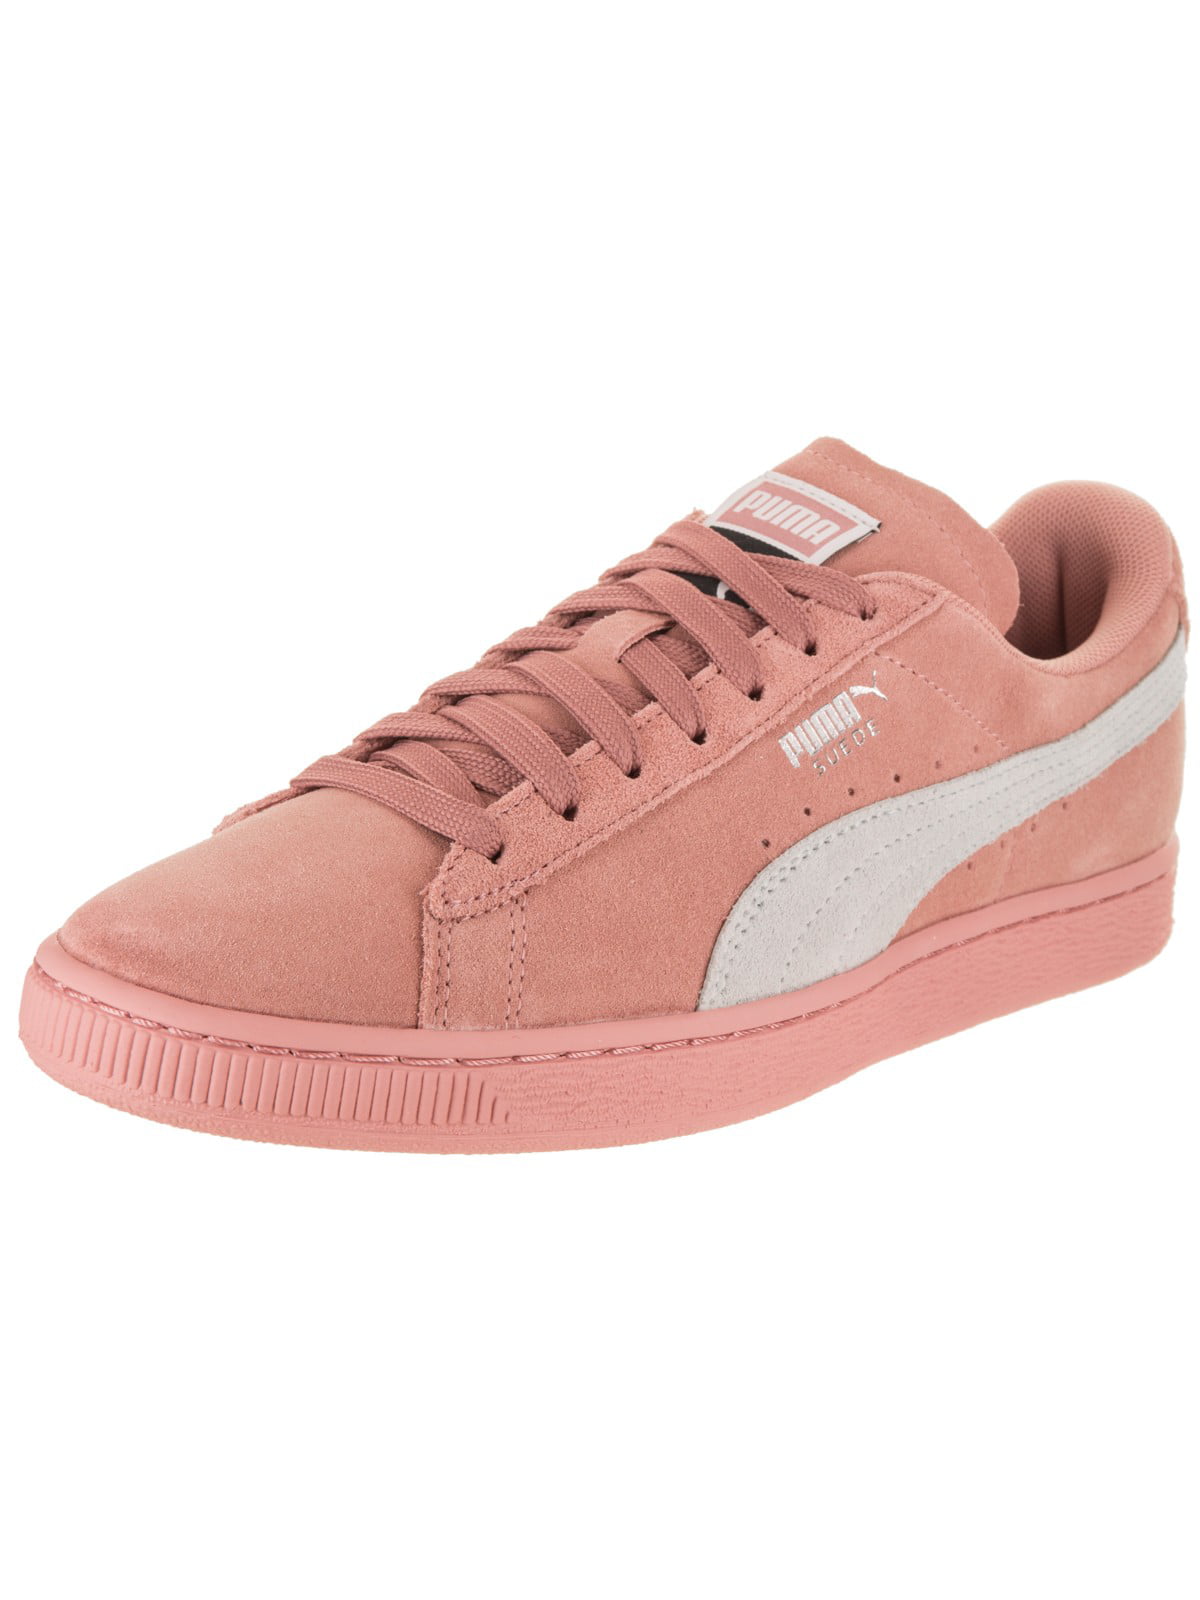 Puma Suede Classic Pink Peach Beige 